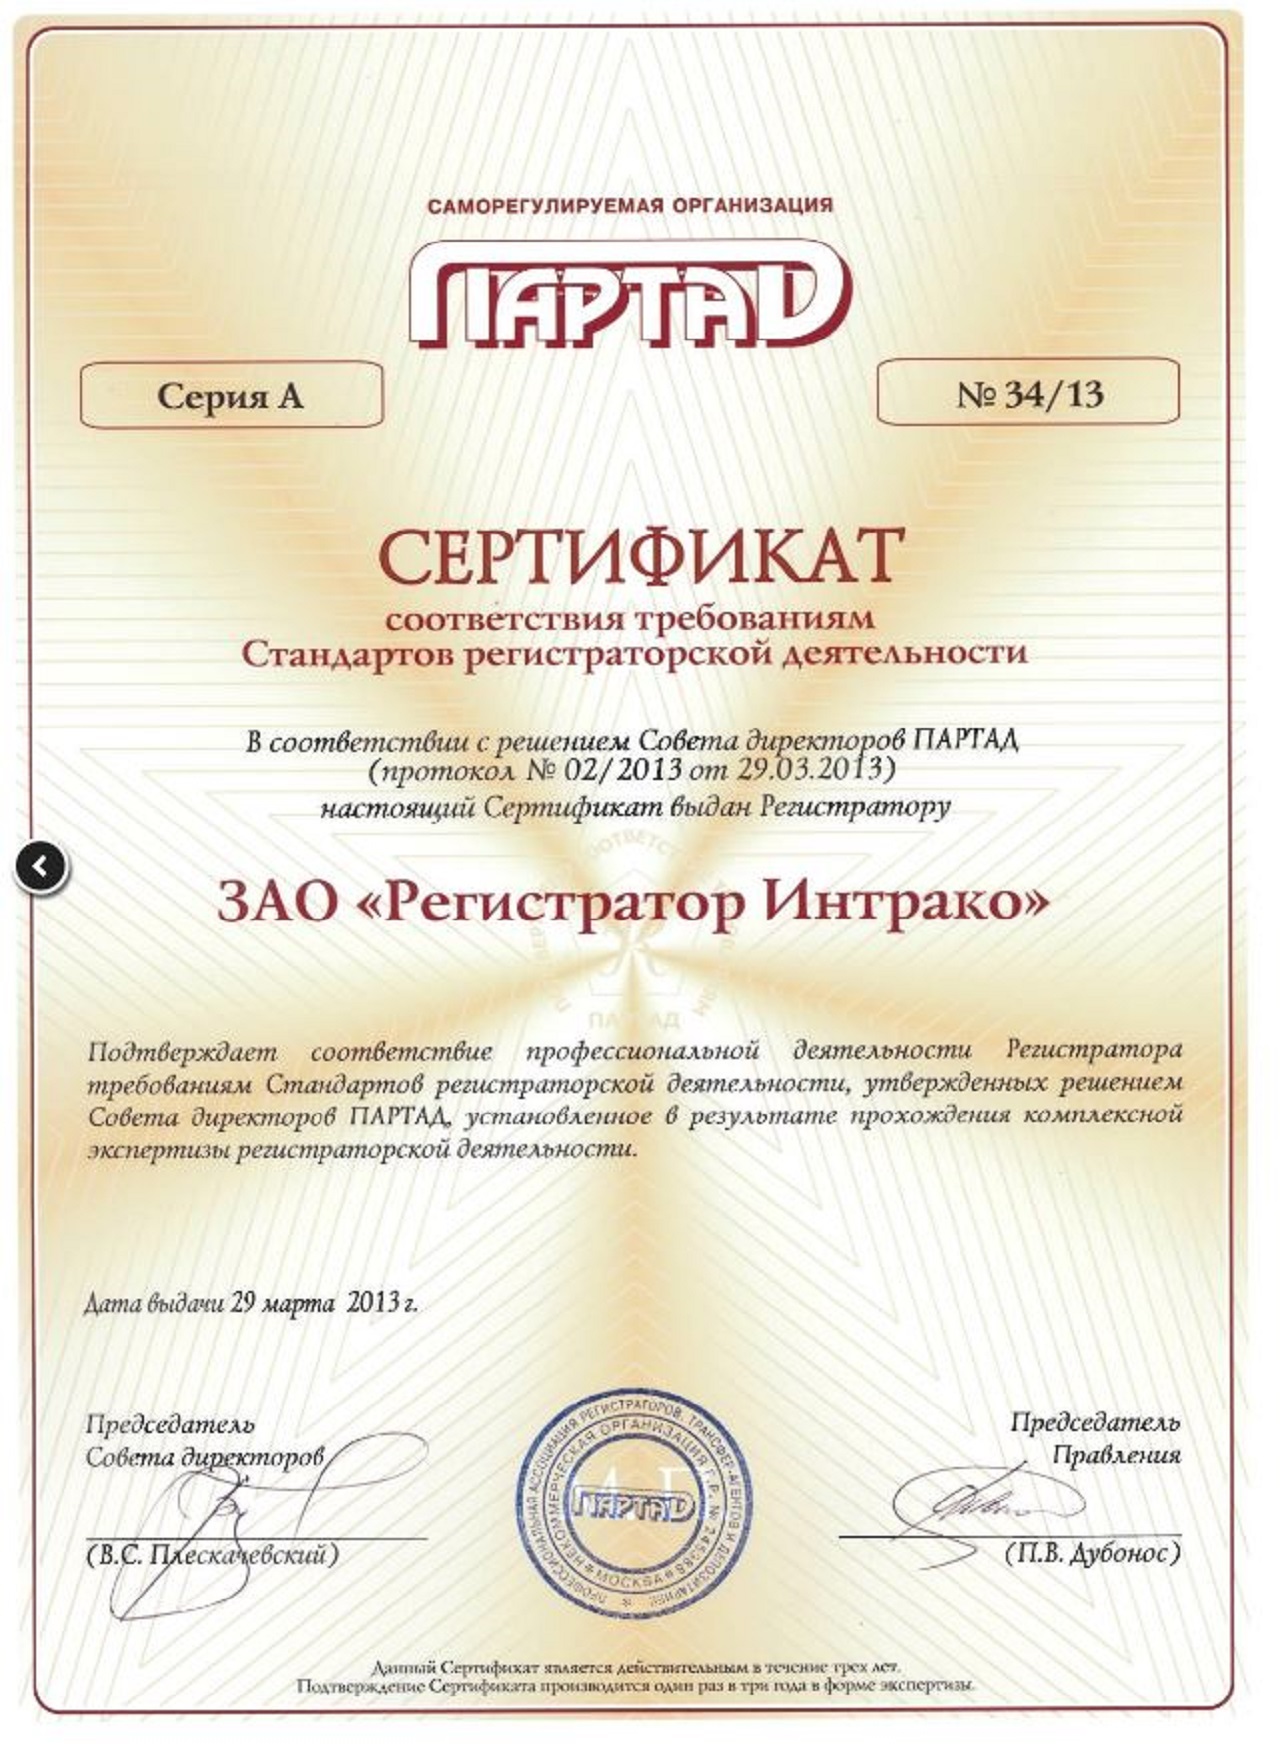 Сертификат ПАРТАД